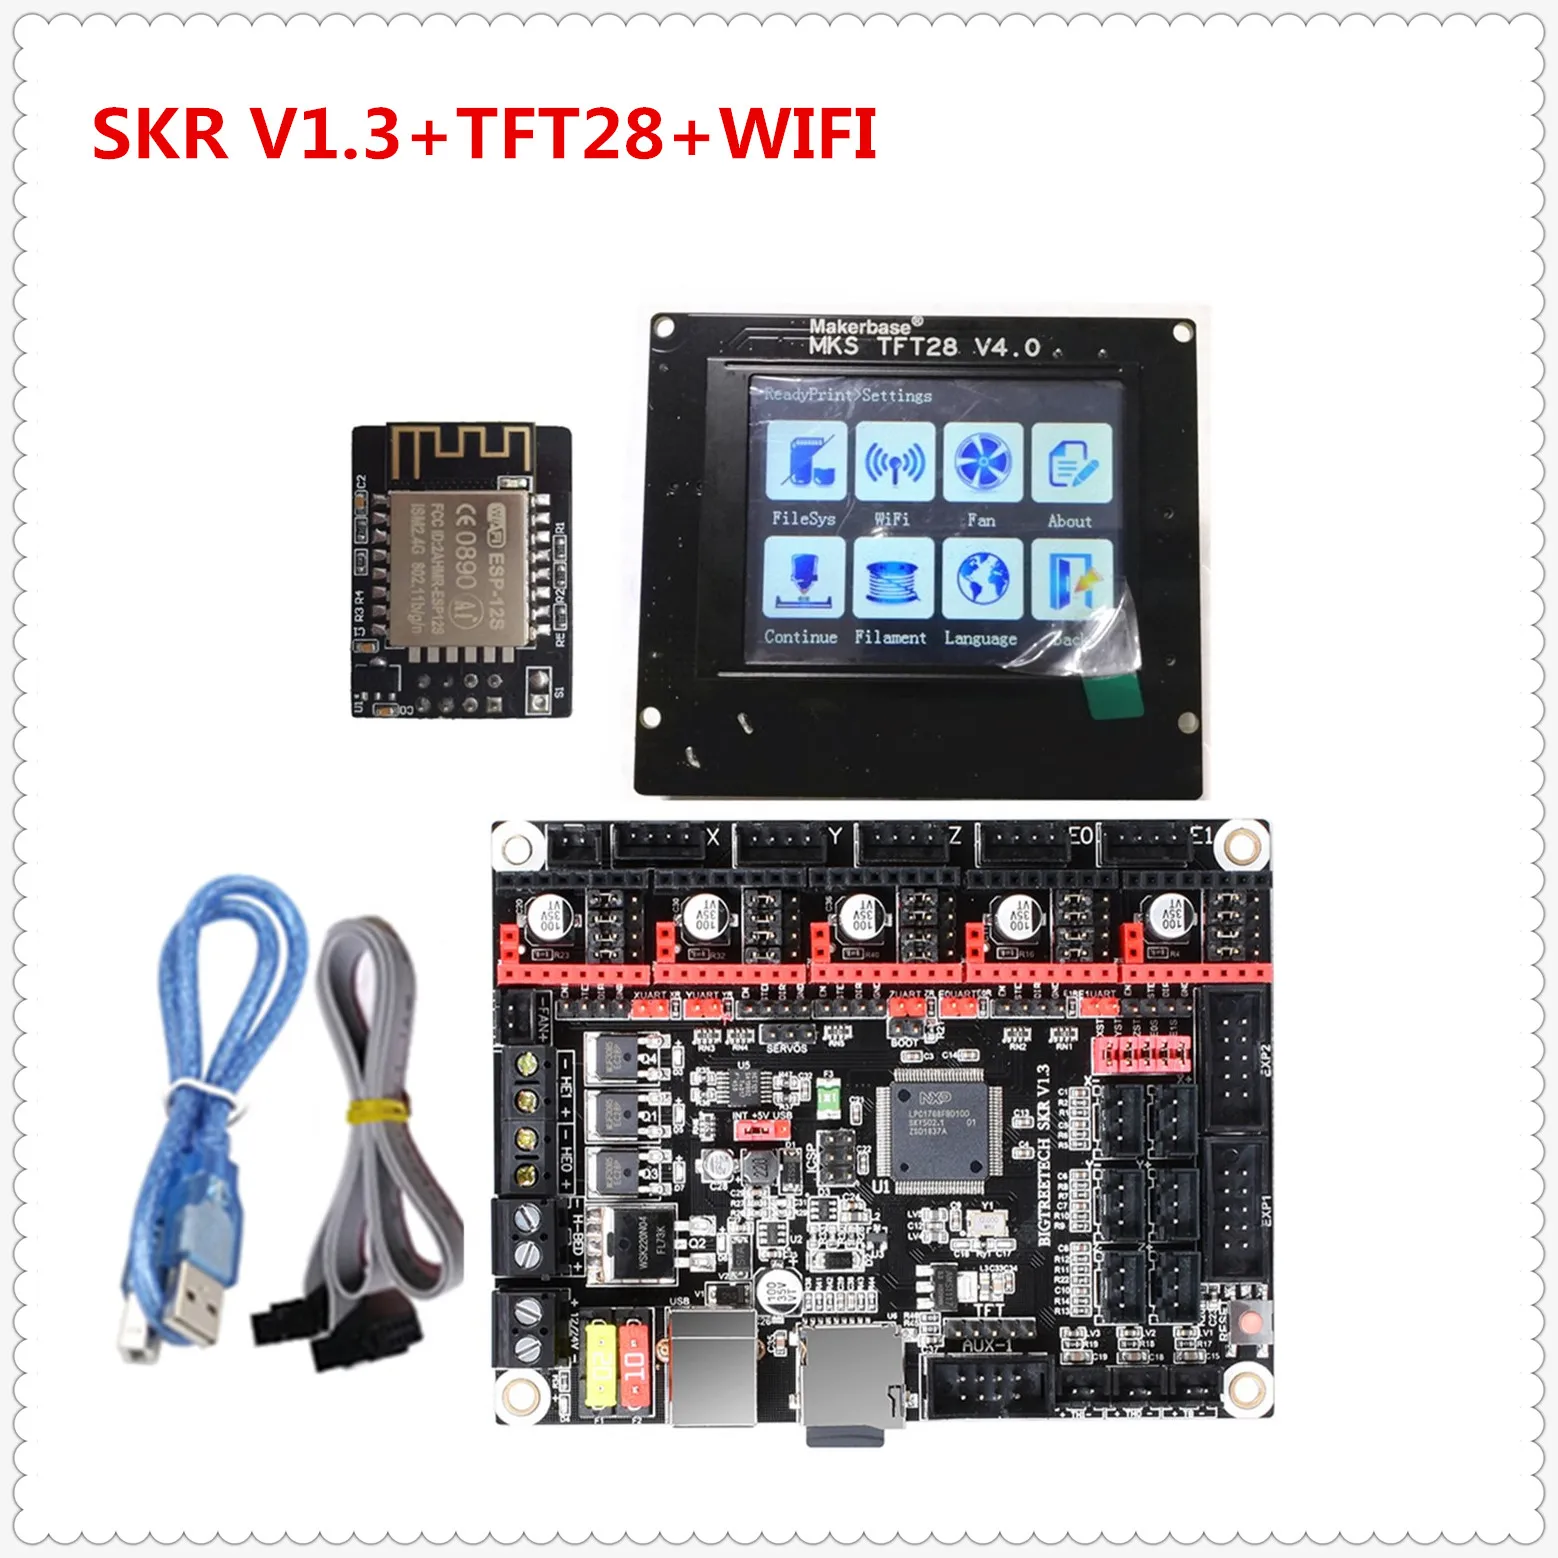 Обновленная пластина для 3D-принтера SKR V1.3 монитор+ MKS TFT 28 V4.0 сенсорный дисплей+ Wi-Fi контроллер запасной блок для 3D-принтера контроллер